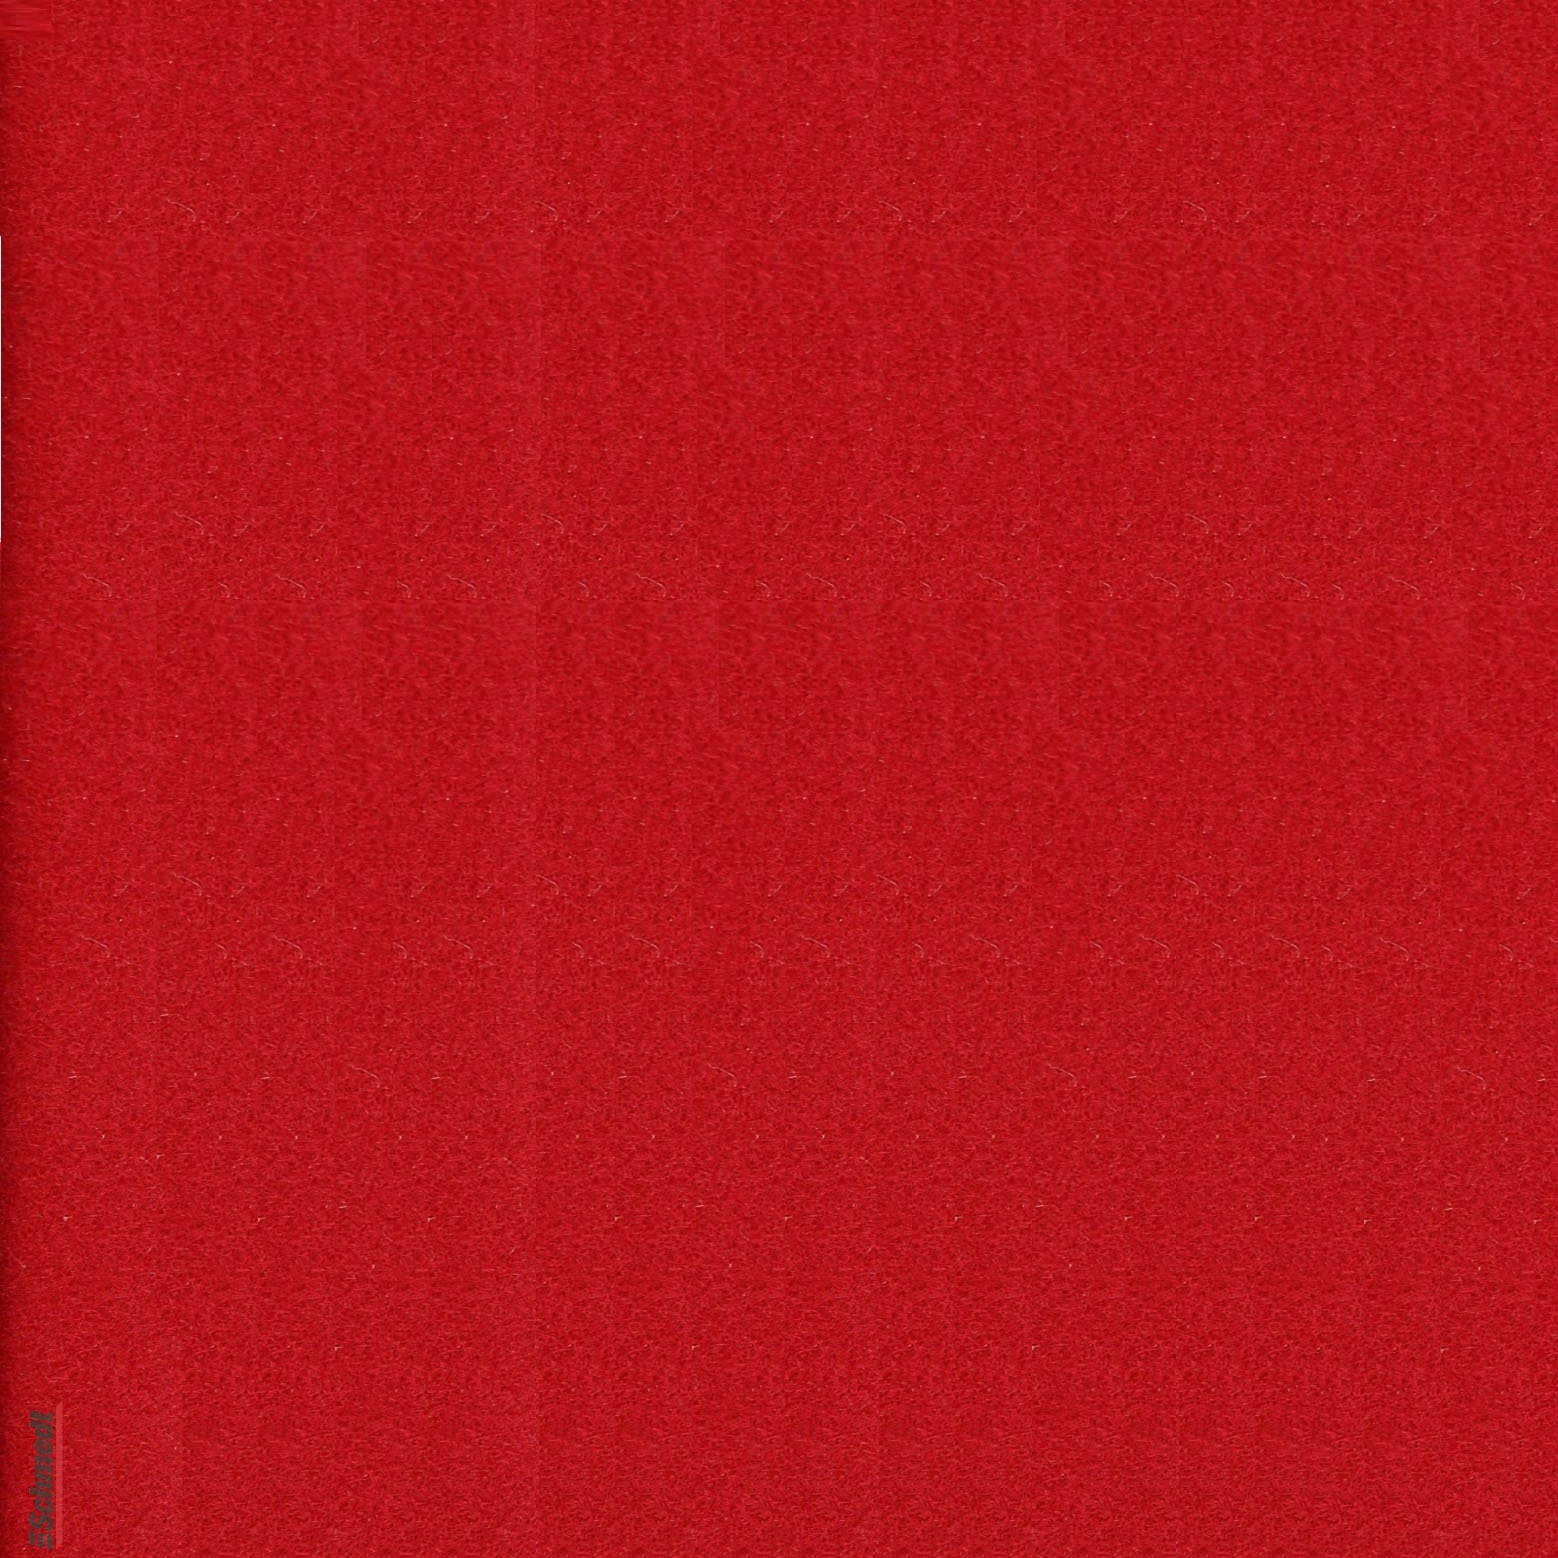 Velours-Papier - Farbe 299 - hellrot - zum Beziehen von Büchern, Schachteln, als Innenfutter für Kästen und Schuber, zum Gestalten von Einla...